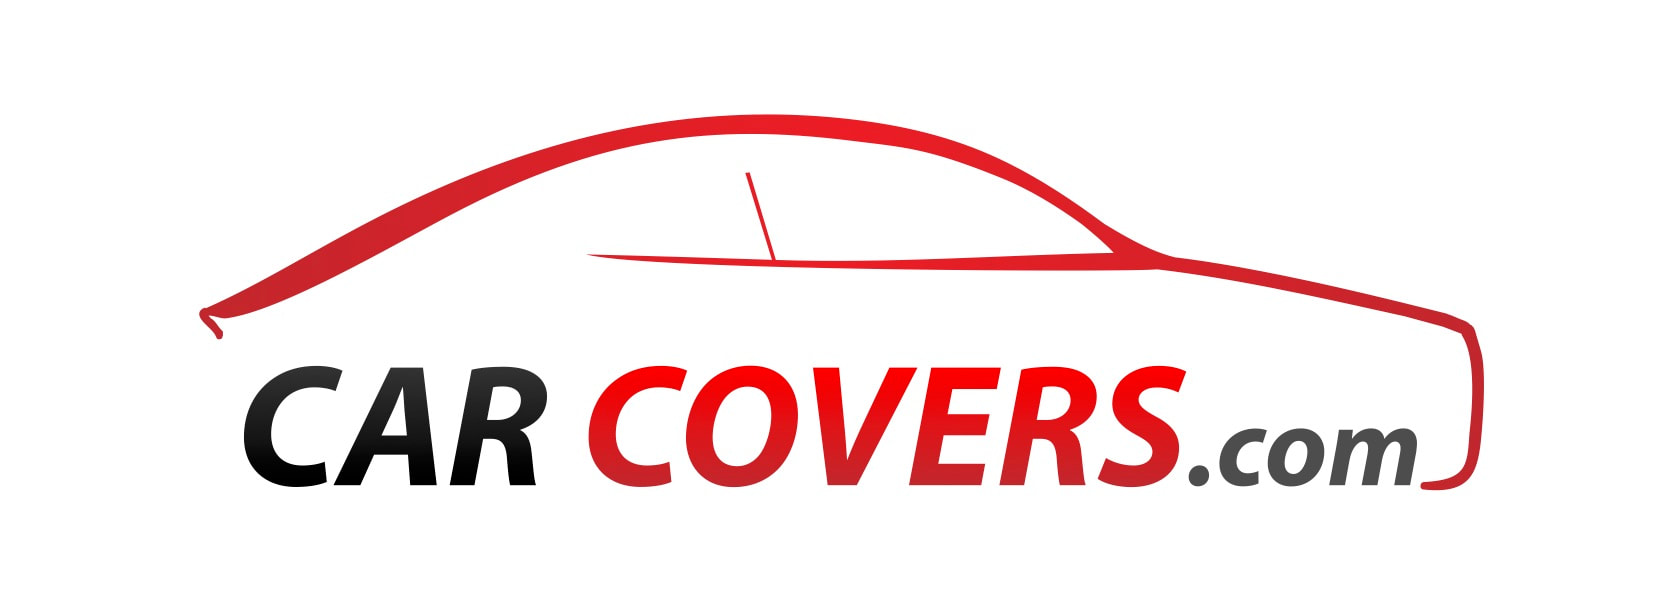 Car Covers.com logo